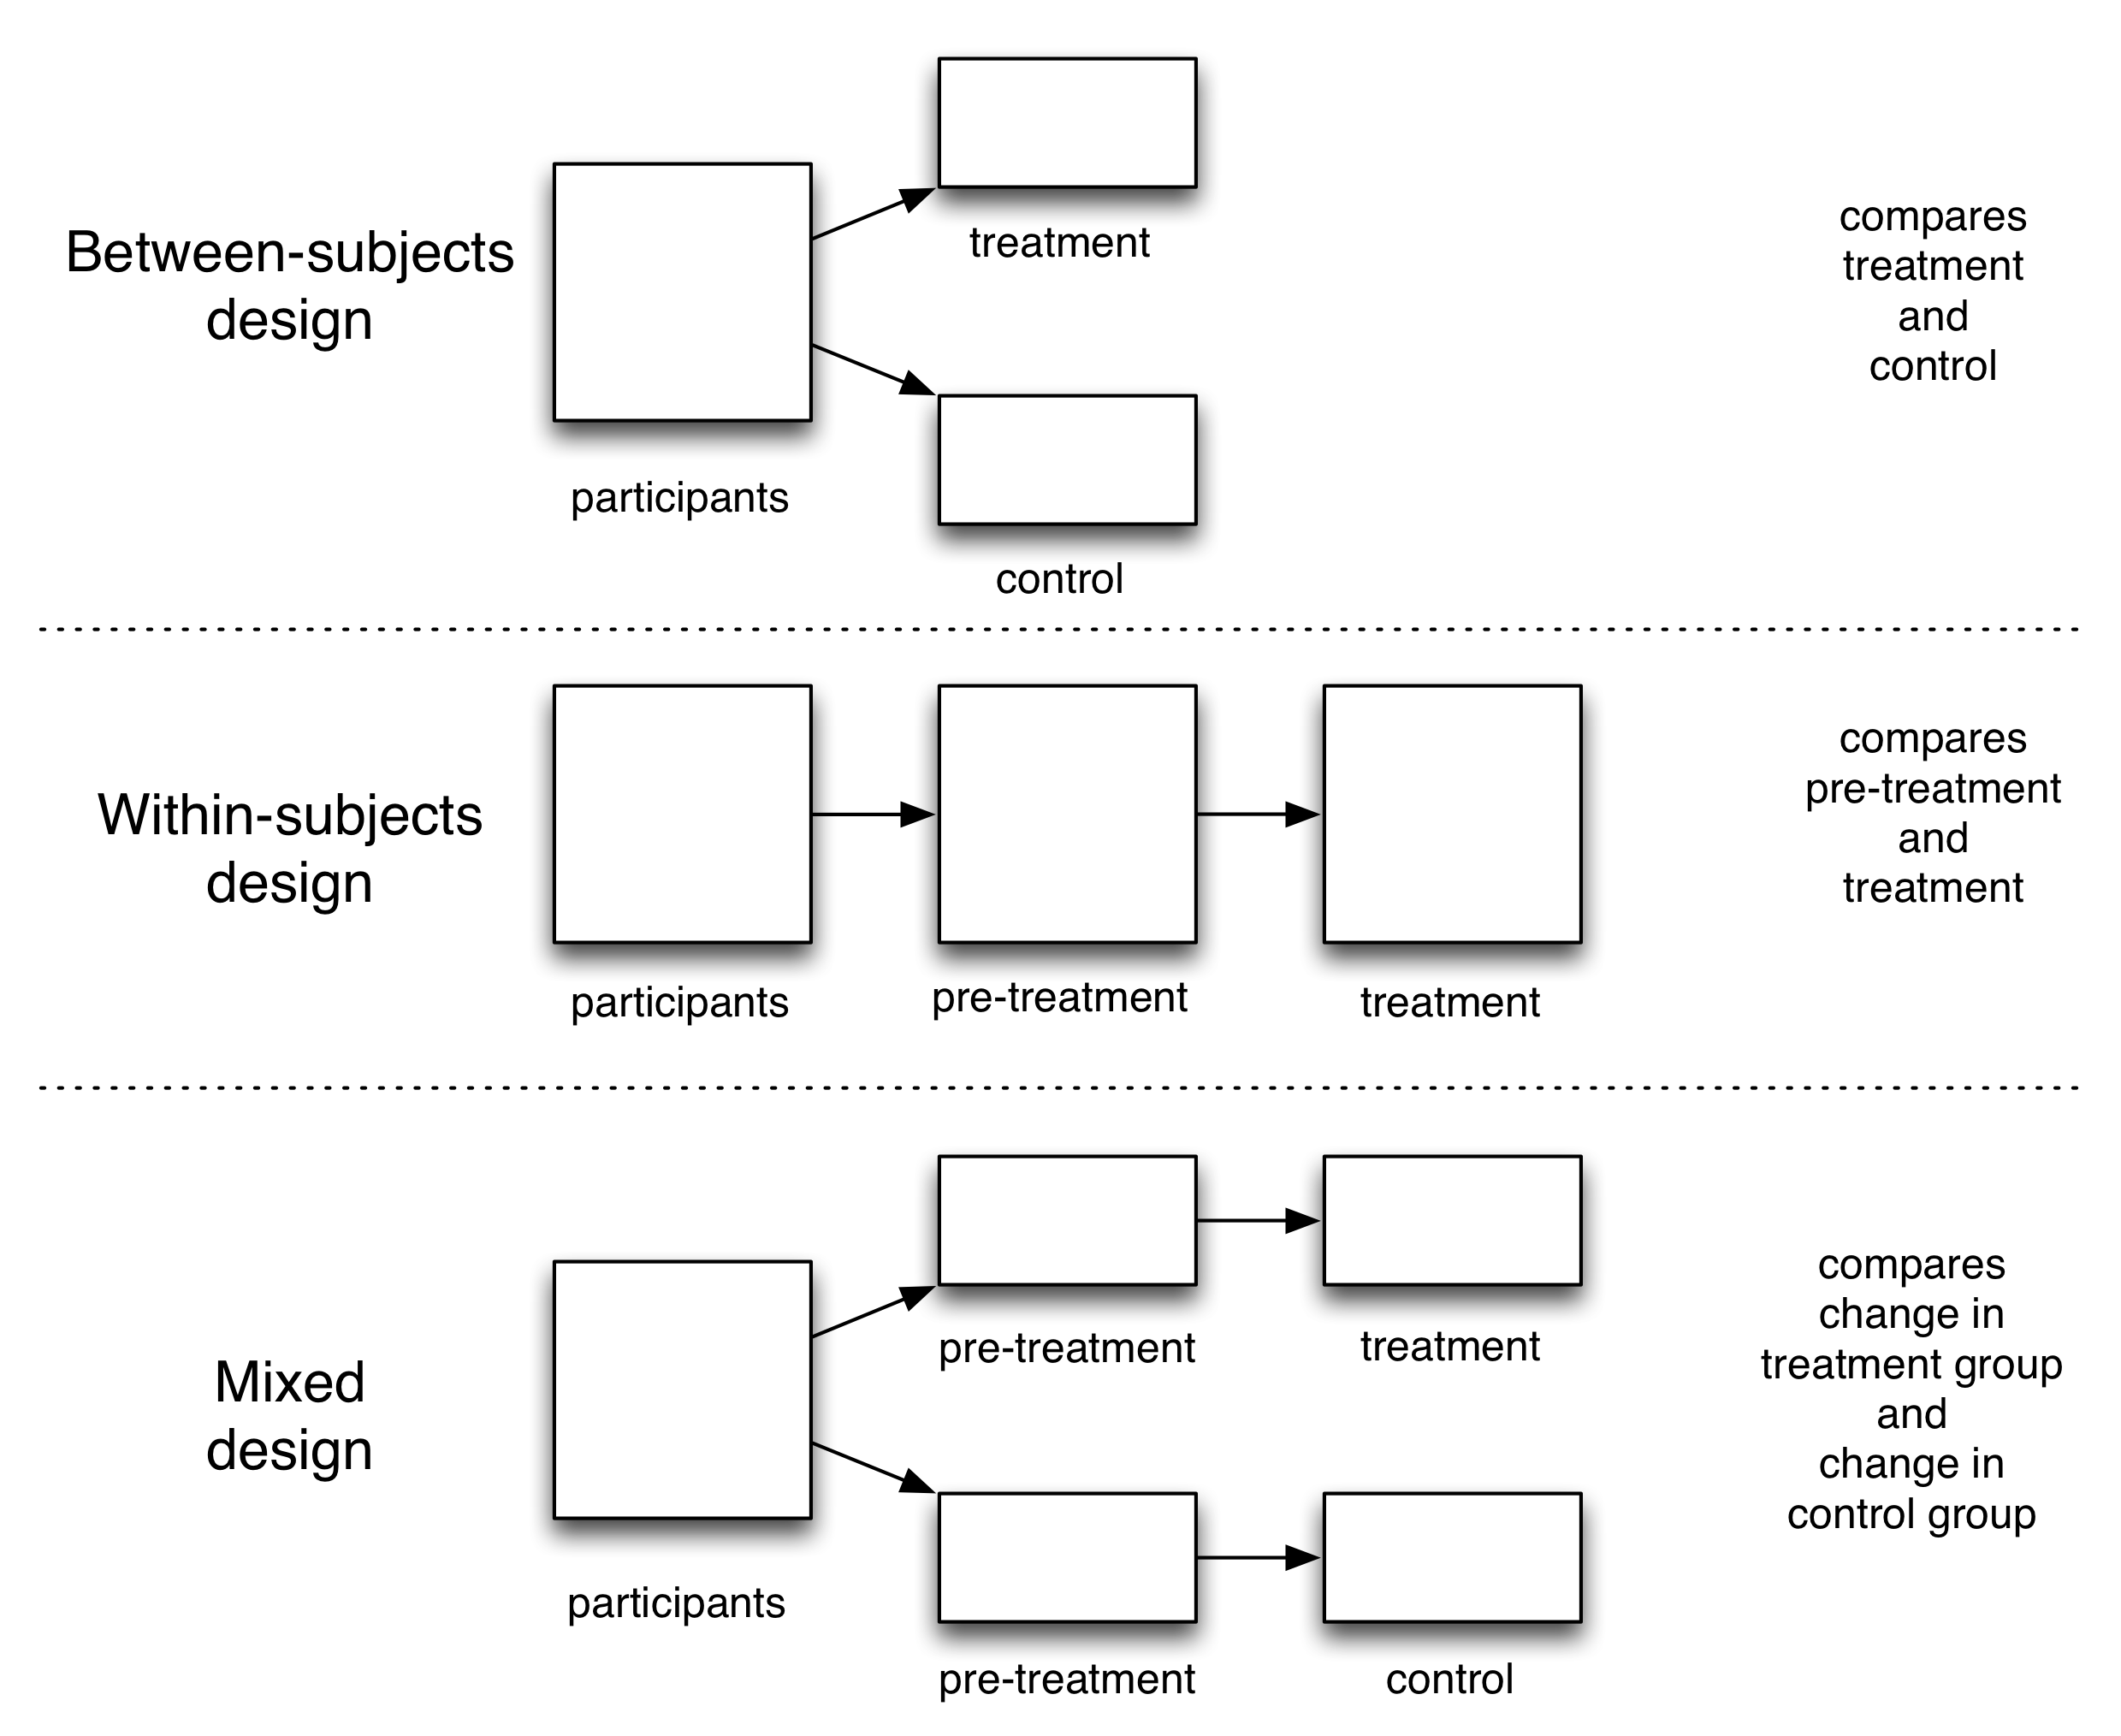 รูปที่ 4.5: สามการออกแบบการทดลอง มาตรฐานการสุ่มทดลองใช้ควบคุมระหว่างวิชาออกแบบ ตัวอย่างของการออกแบบระหว่างอาสาสมัครเป็น Restivo และแวนเดอ Rijt ของ (2012) ทดลอง barnstars และผลงานของวิกิพีเดีย: นักวิจัยแบ่งผู้เข้าร่วมเป็นกลุ่มการรักษาและการควบคุมให้ผู้เข้าร่วมในกลุ่มรักษายุ้งข้าวและเมื่อเทียบผลสำหรับสอง กลุ่ม ประเภทที่สองของการออกแบบคือการออกแบบภายในวิชา ทั้งสองการทดลองในชูลท์ซและเพื่อนร่วมงาน (2007) การศึกษาเกี่ยวกับบรรทัดฐานทางสังคมและการใช้พลังงานแสดงให้เห็นถึงการออกแบบภายในวิชา: นักวิจัยเปรียบเทียบการใช้ไฟฟ้าของผู้เข้าร่วมก่อนและหลังจากที่ได้รับการรักษา ภายในวิชาการออกแบบให้มีความแม่นยำทางสถิติที่ดีขึ้นโดยการกำจัดระหว่างเรื่องความแปรปรวน (ดูเทคนิคภาคผนวก) แต่พวกเขาจะเปิดให้ตัวแปรที่เป็นไปได้ (เช่นการเปลี่ยนแปลงในสภาพอากาศระหว่างการรักษาก่อนและระยะเวลาการรักษา) (วาล์ด 1976 Charness, Gneezy และ Kuhn 2012) ภายในวิชาออกแบบที่บางครั้งเรียกว่าซ้ำออกแบบมาตรการ ในที่สุดการออกแบบที่ผสมรวมความแม่นยำของการออกแบบภายในและอาสาสมัครป้องกันการรบกวนของการออกแบบระหว่างอาสาสมัคร ในการออกแบบผสมนักวิจัยเปรียบเทียบการเปลี่ยนแปลงในผลสำหรับคนที่อยู่ในกลุ่มการรักษาและการควบคุม เมื่อนักวิจัยมีข้อมูลการรักษาก่อนแล้วเป็นกรณีในการทดลองดิจิตอลจำนวนมากที่ออกแบบผสมเป็นที่นิยมในการออกแบบระหว่างอาสาสมัครเพราะของกำไรในความแม่นยำ (ดูภาคผนวกเทคนิค)